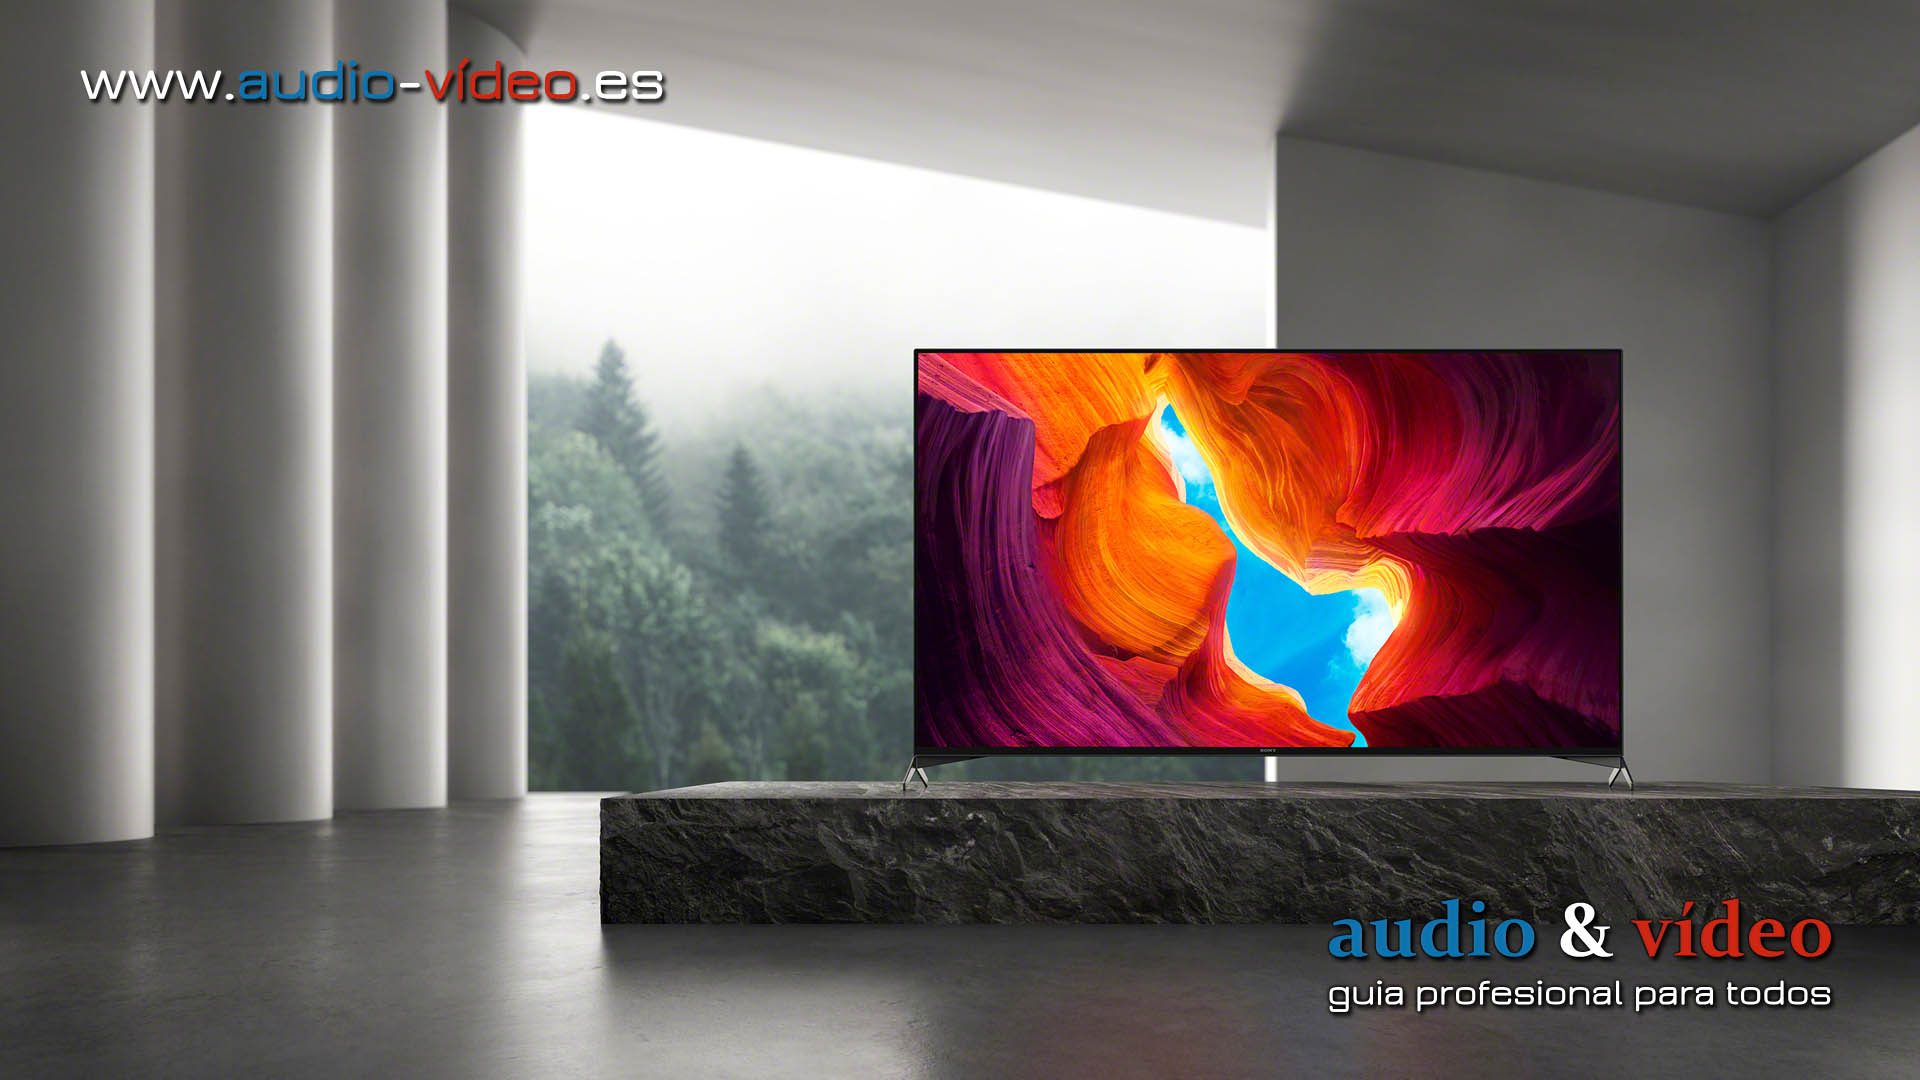 Los nuevos televisores de Sony serie XH95 4K HDR Full Array LED ya están disponibles en España